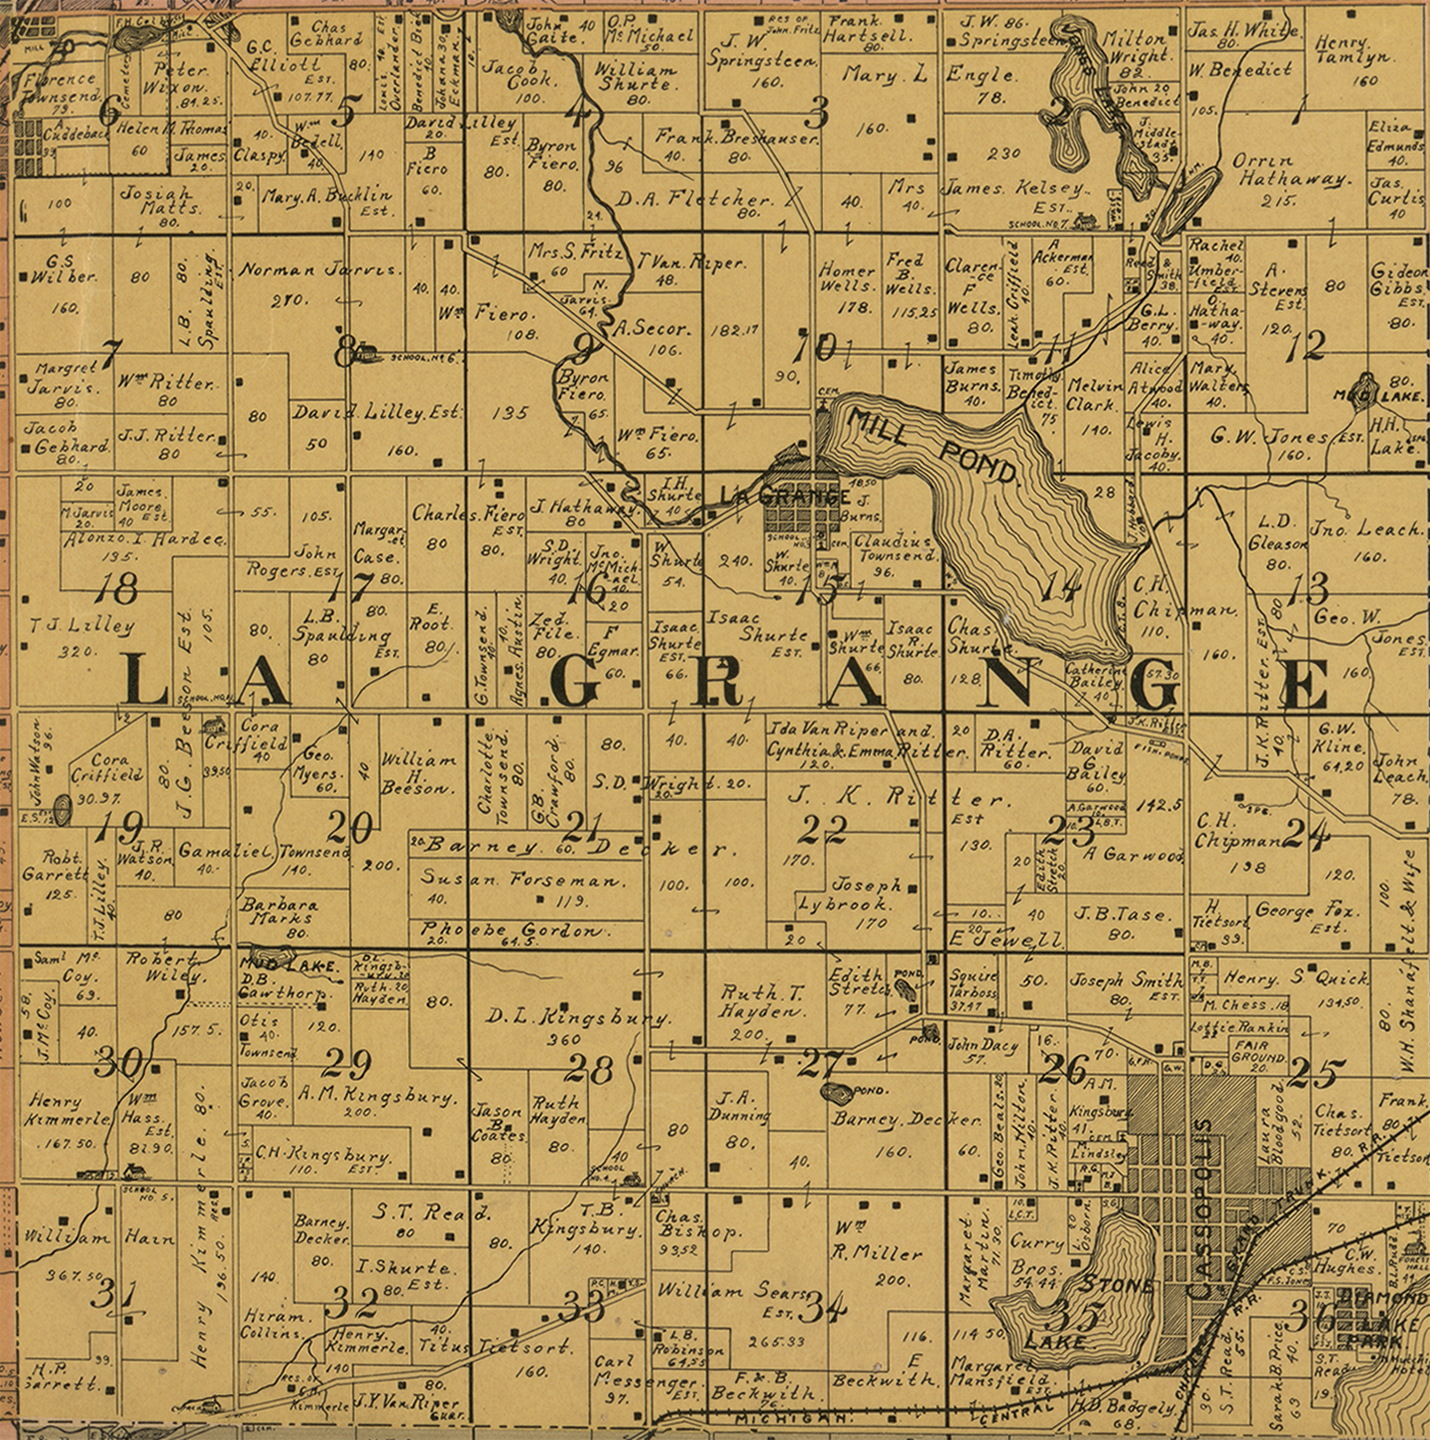 1897 Lagrange Township Michigan landownership map